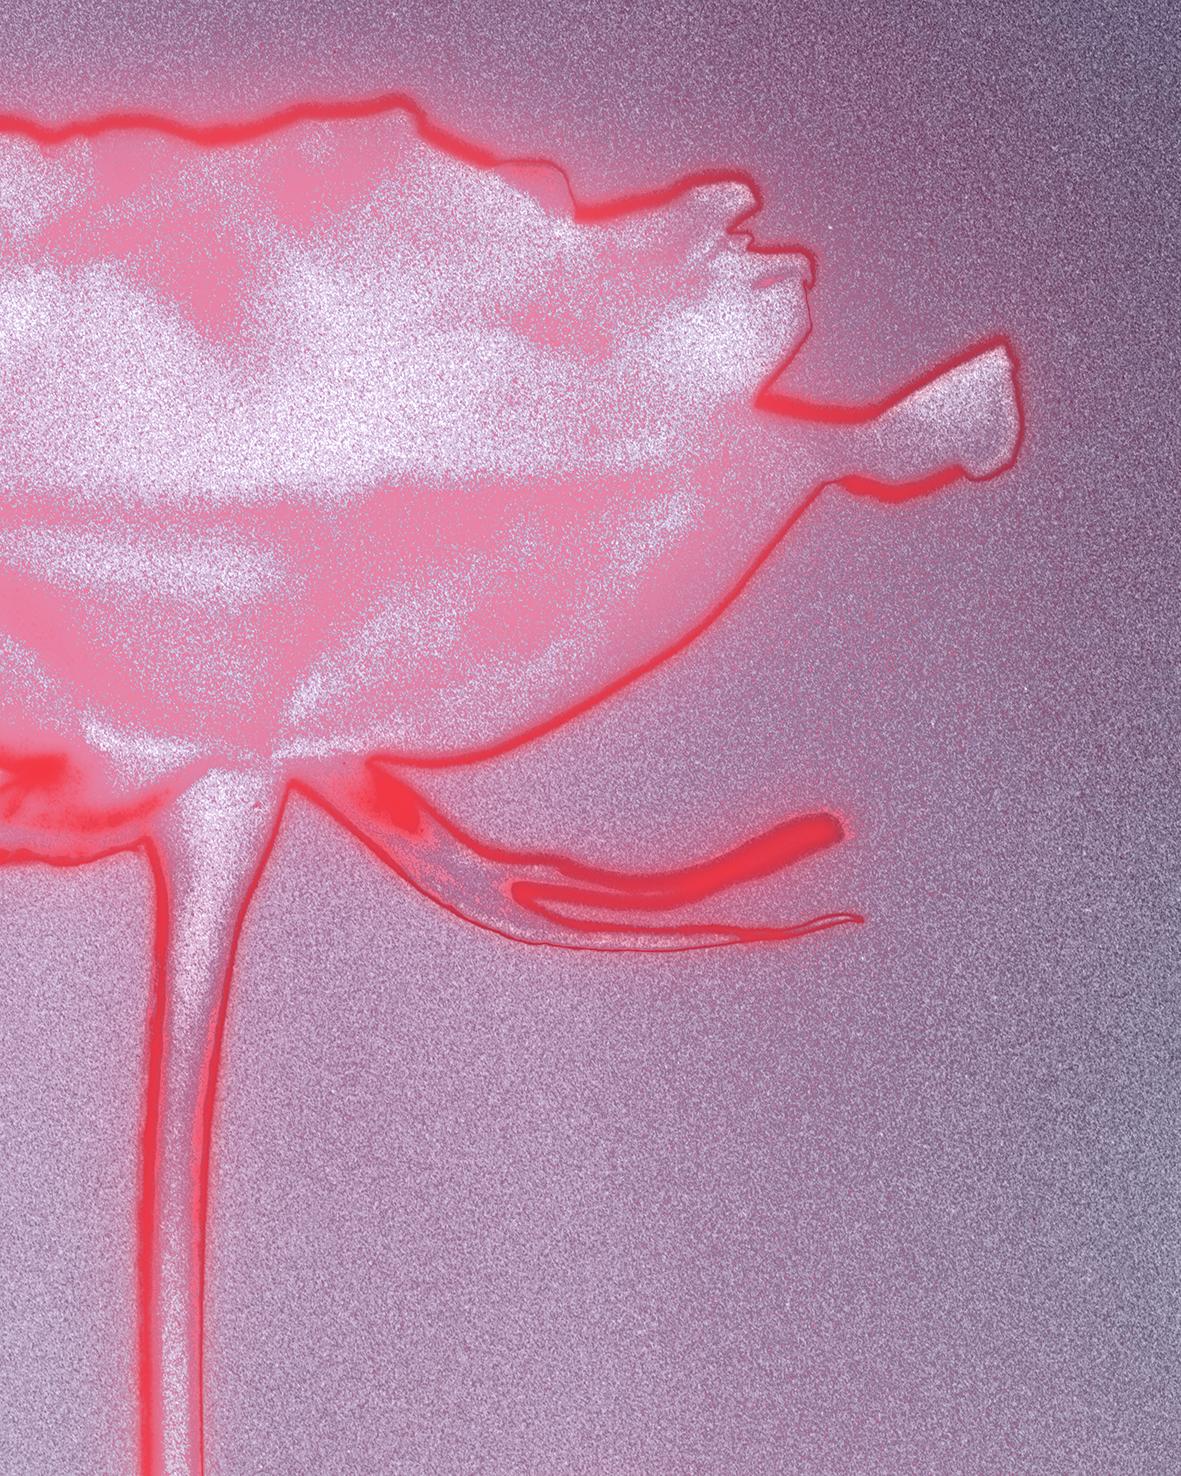 « Rose glow », photographie analogique de natures mortes, technique mixte contemporaine, rose/rouge - Photograph de Ugne Pouwell